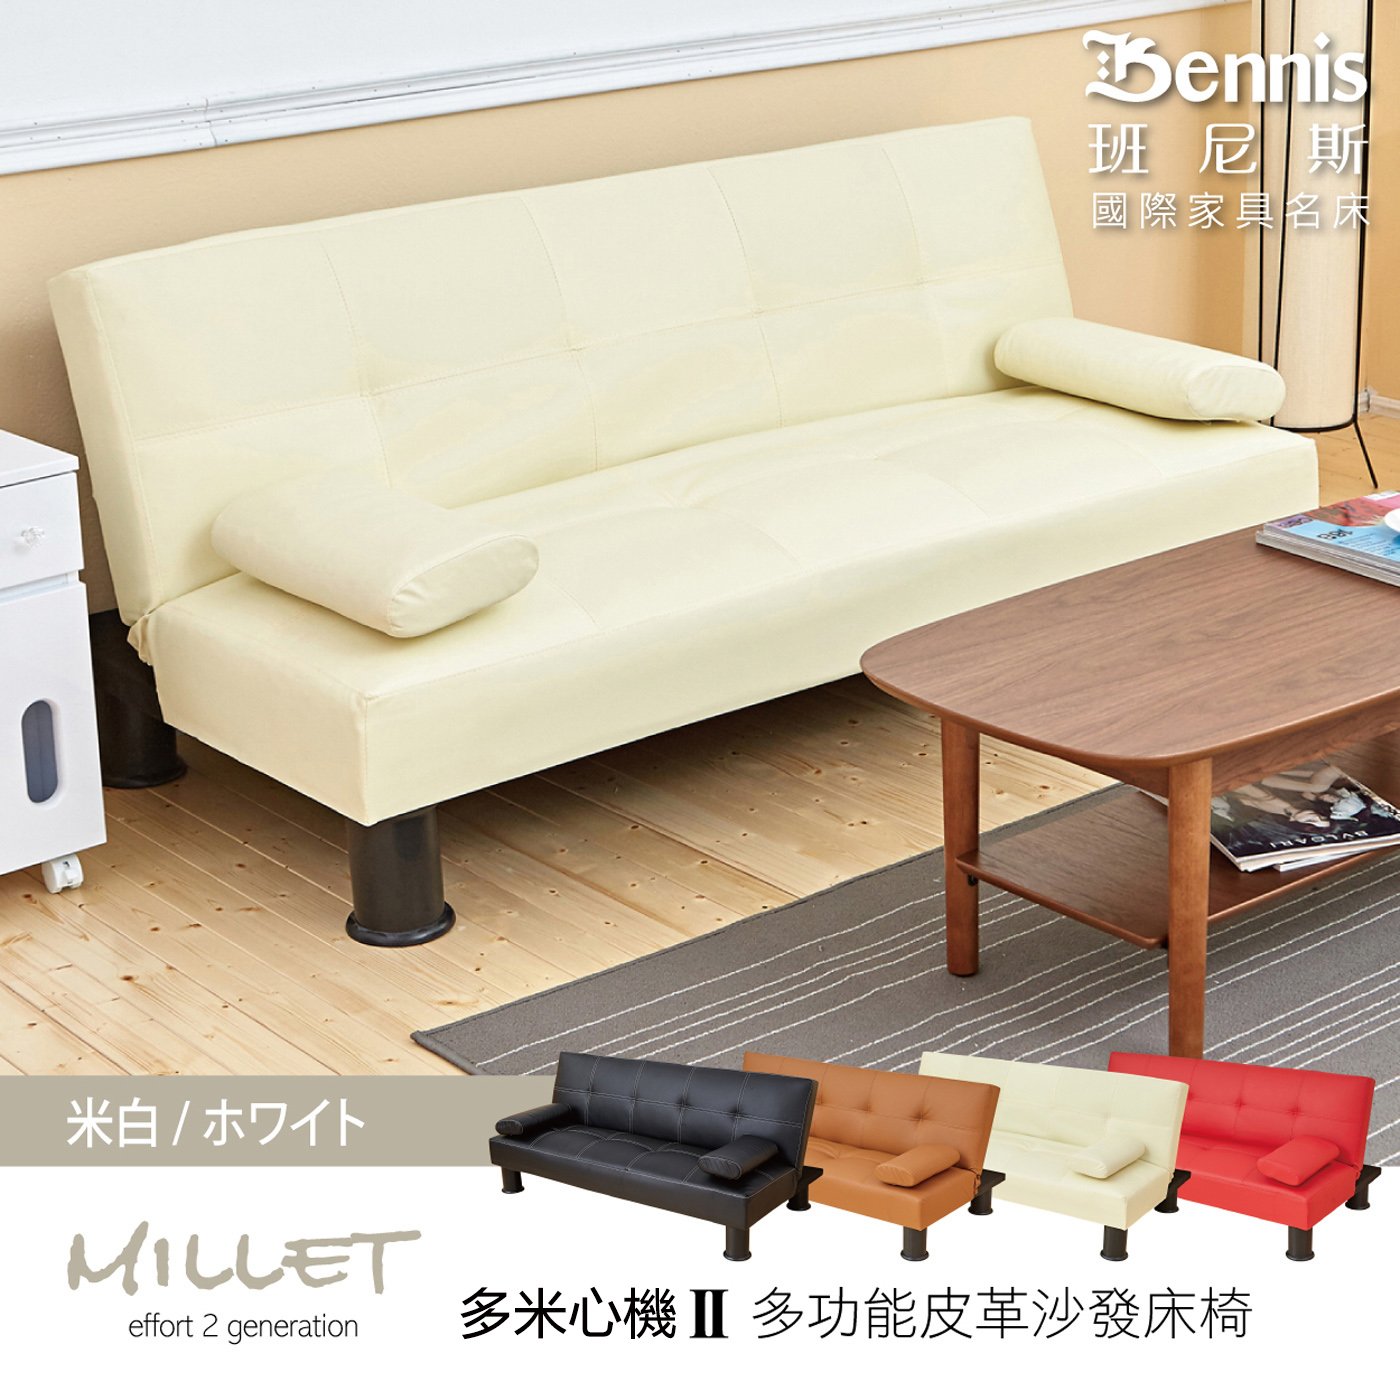 熱銷經典【Millet 多米心機 II代】皮革多人座優質沙發床(升級加贈兩個抱枕)